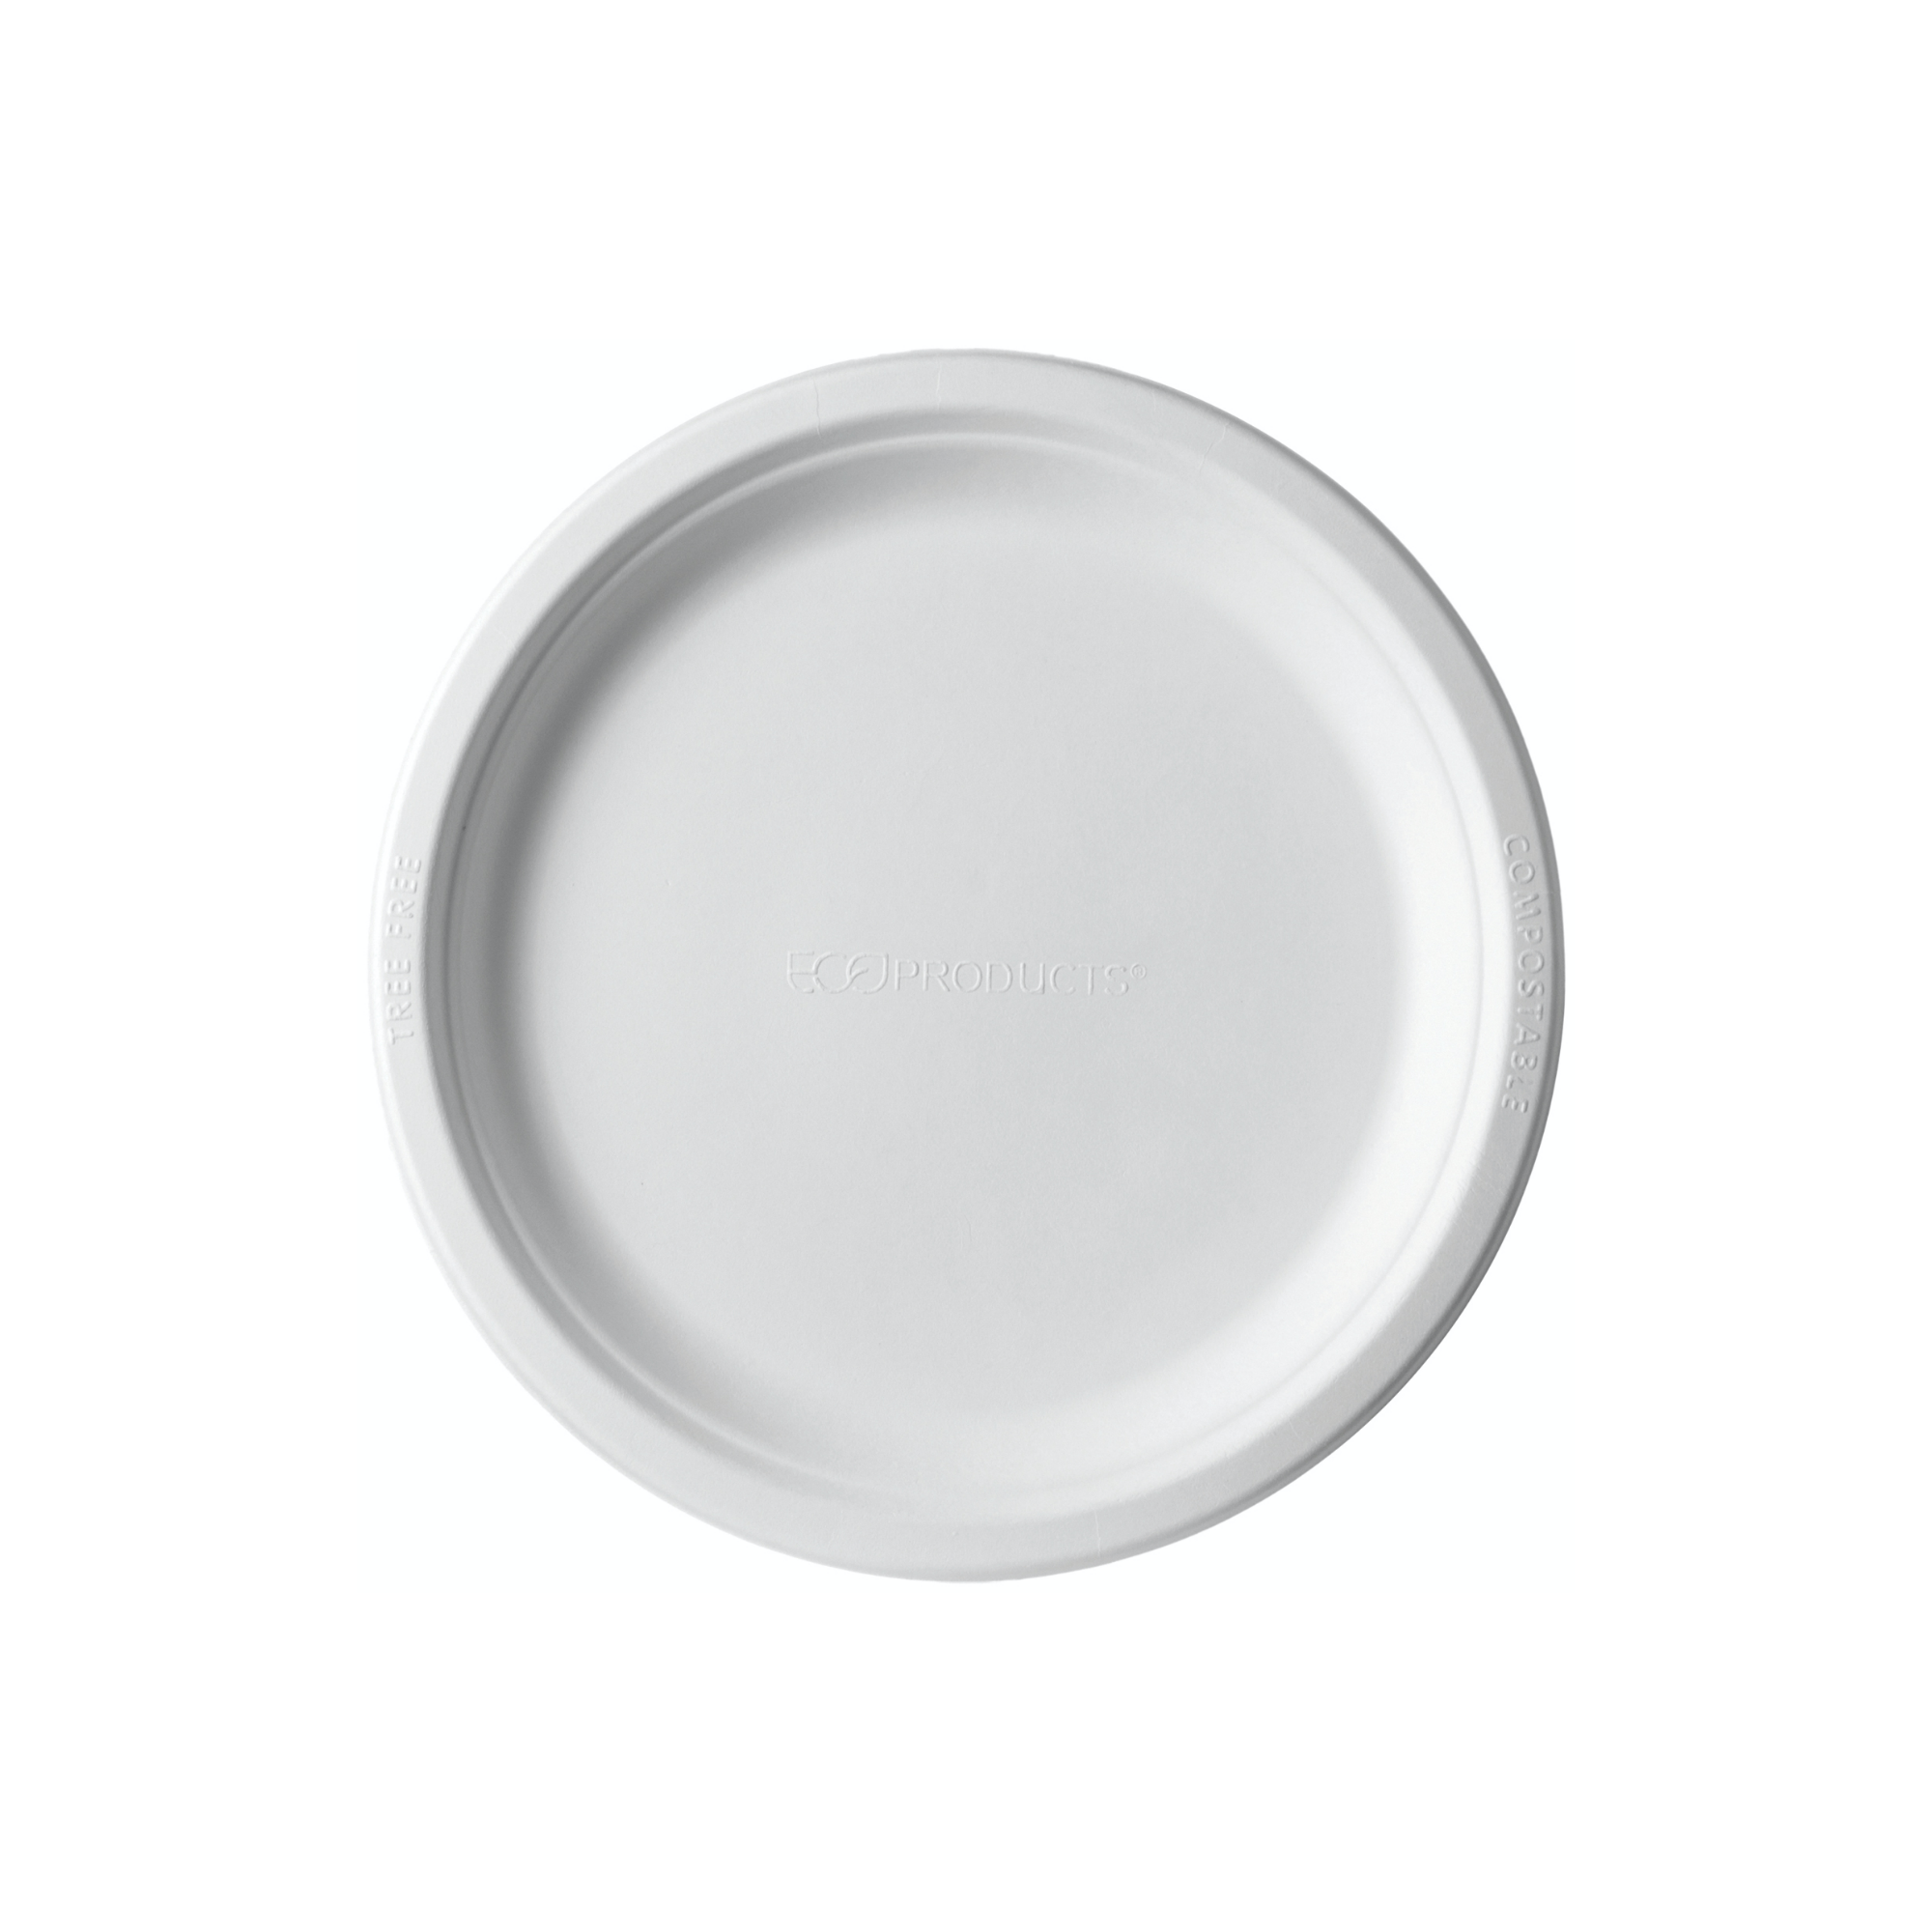 Lapos tányér - Cukornád lapos tányér 230 mm - 50db - Greenstic